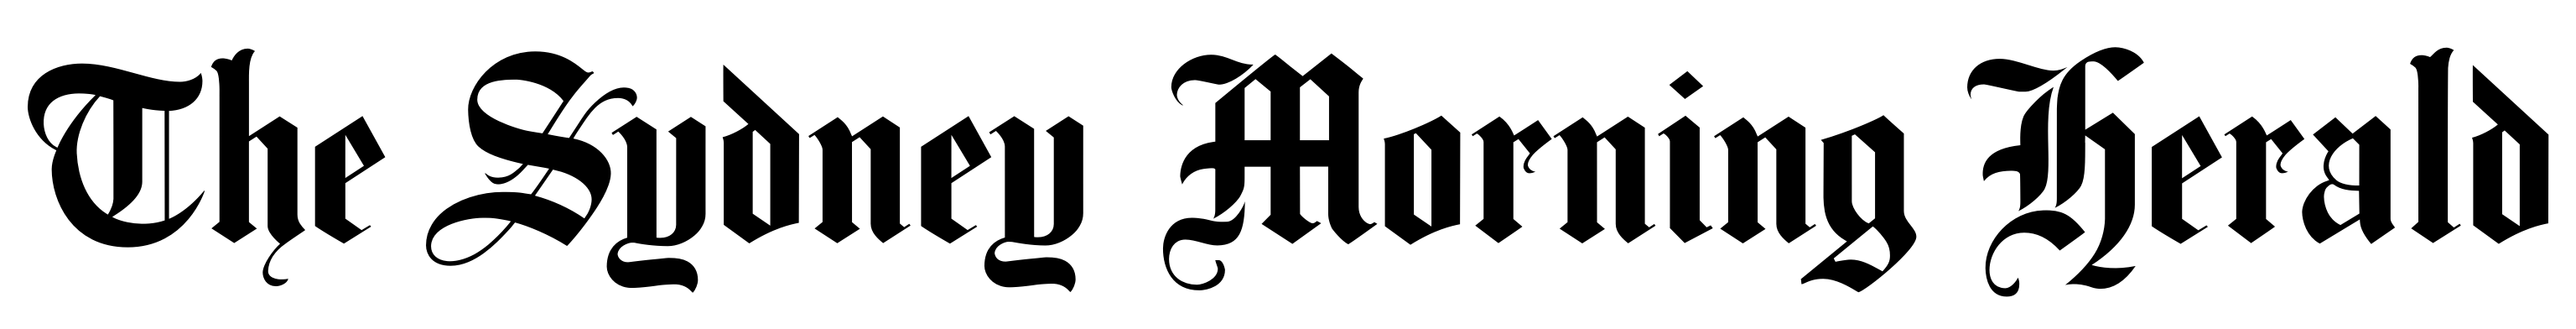 smh-logo-black